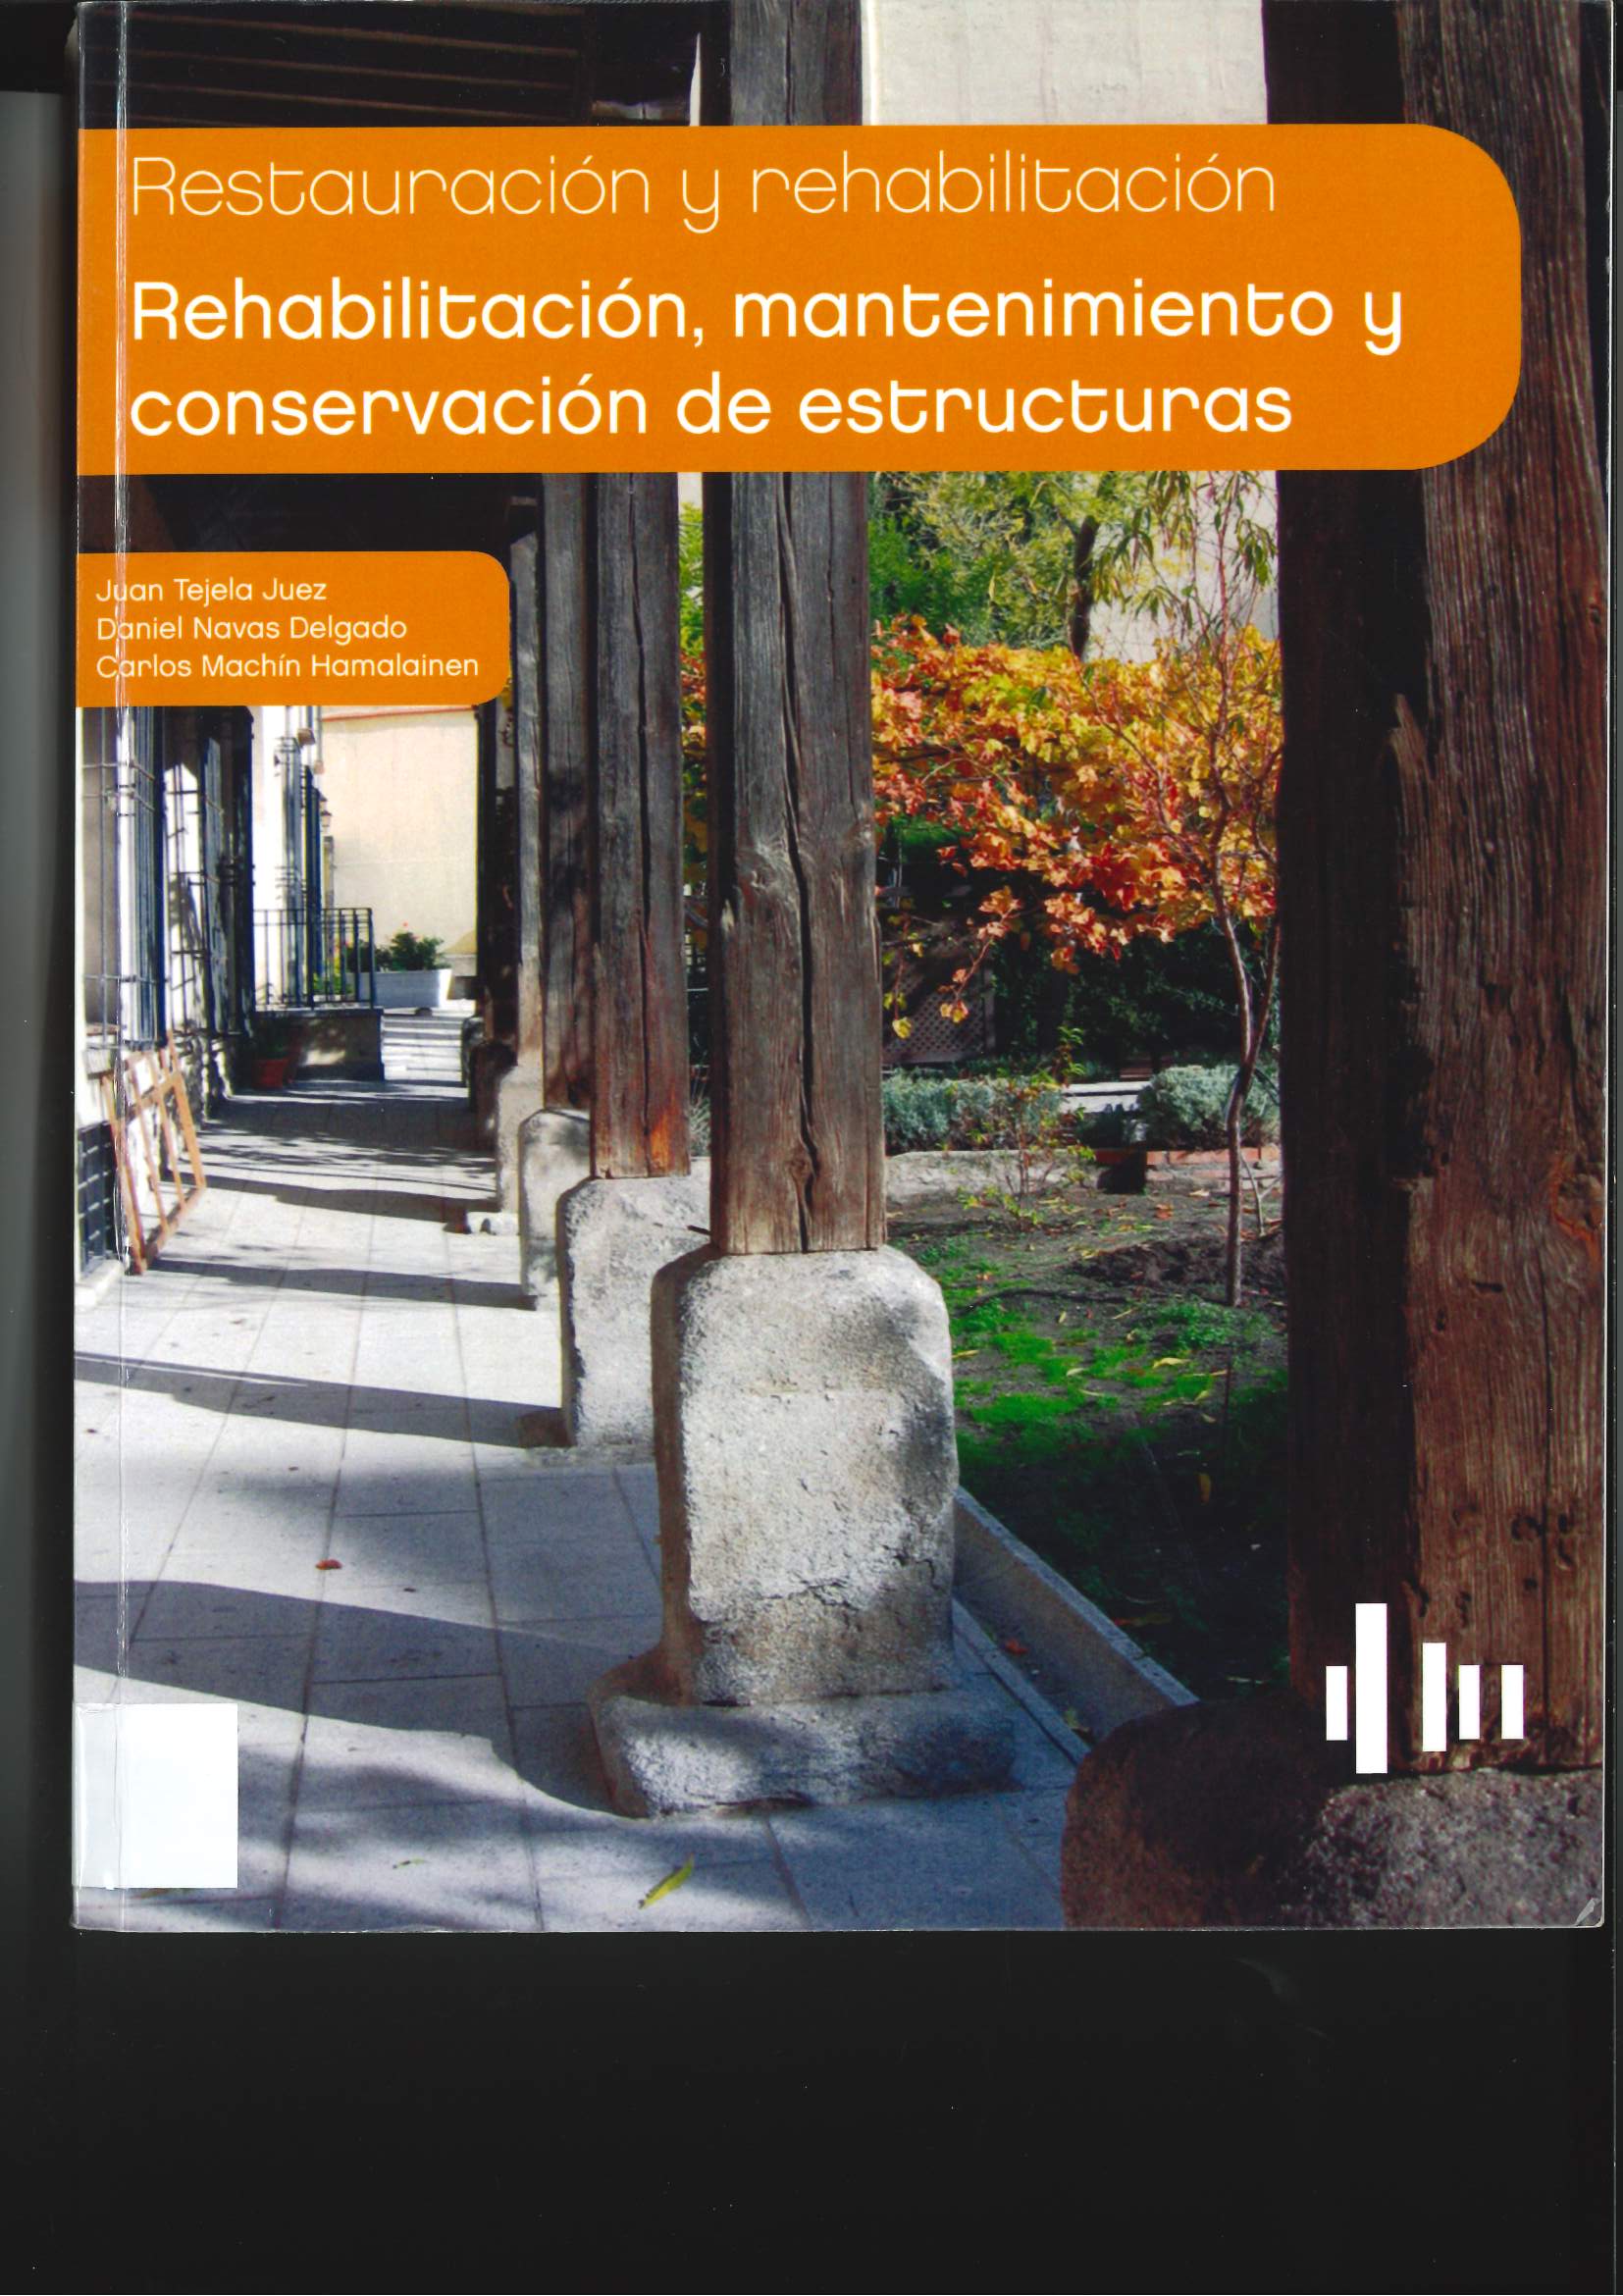 Imagen de portada del libro Rehabilitación, mantenimiento y conservación de estructuras